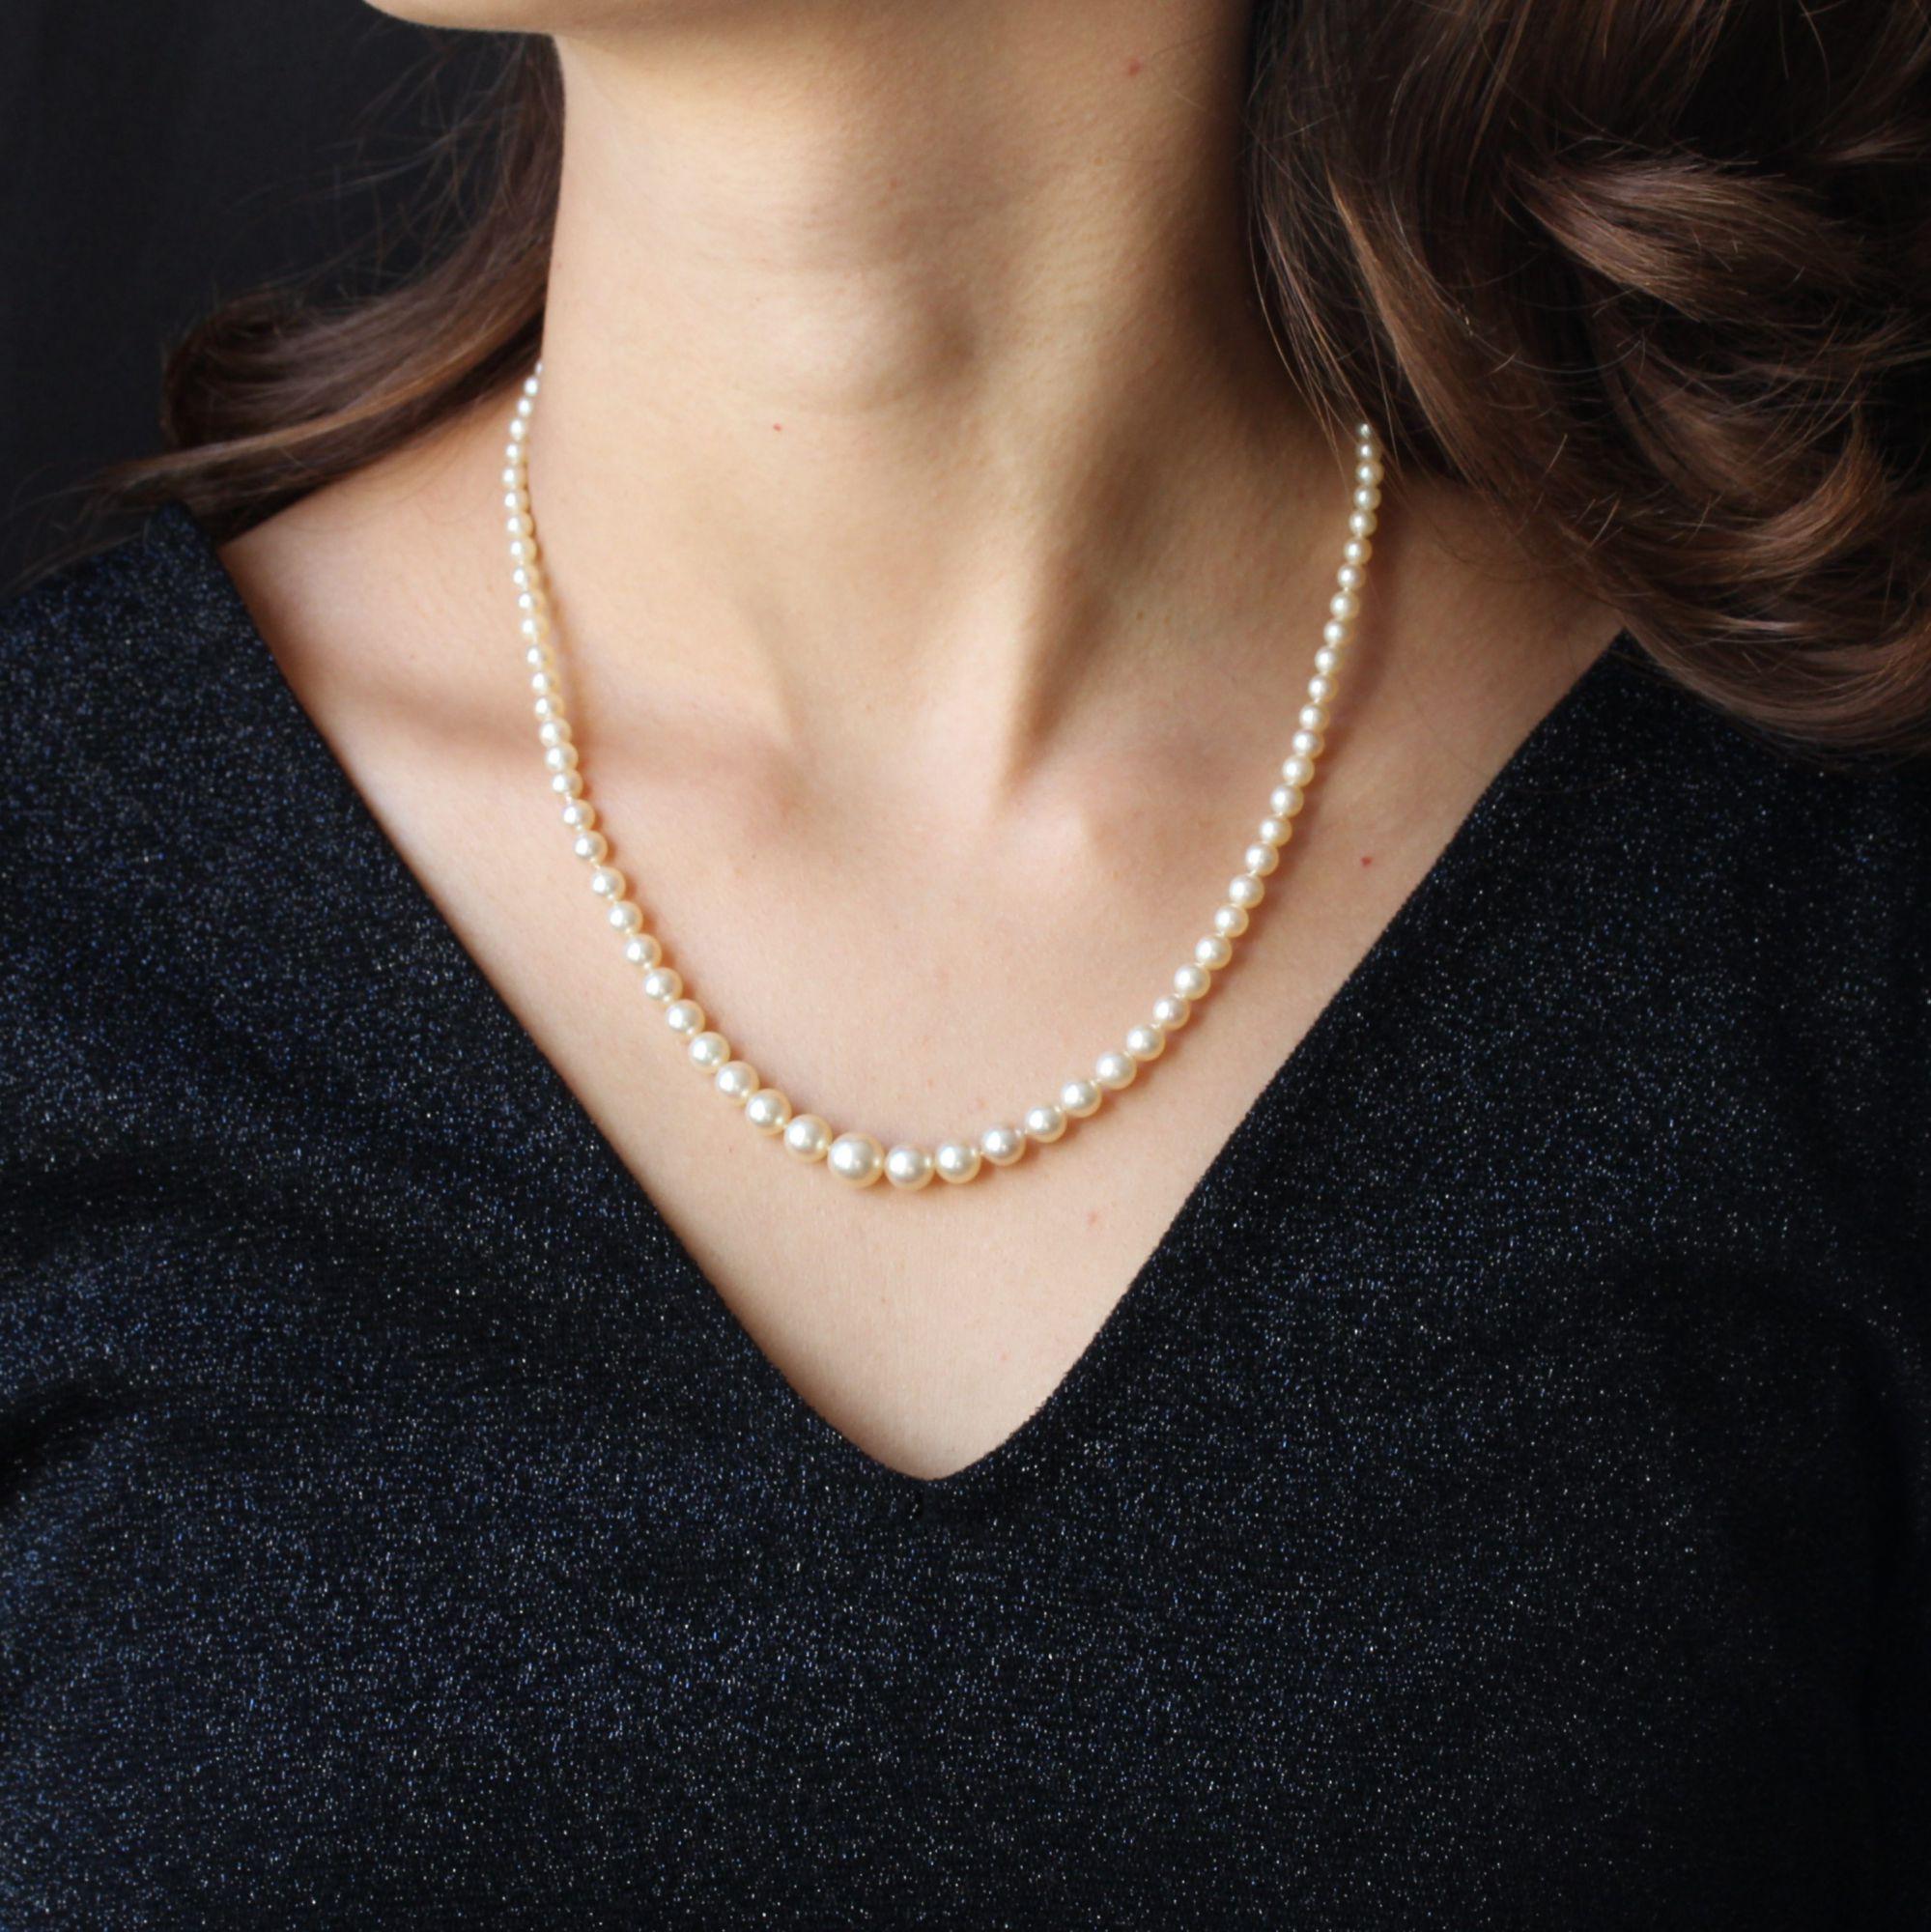 Collier de perles de culture en automne, orient blanc rosé.
Le fermoir, en or blanc 18 carats, est de forme rectangulaire, ajouré aux extrémités et serti au centre d'un diamant taille brillant, entouré de diamants taille 8/8. Le fermoir est à